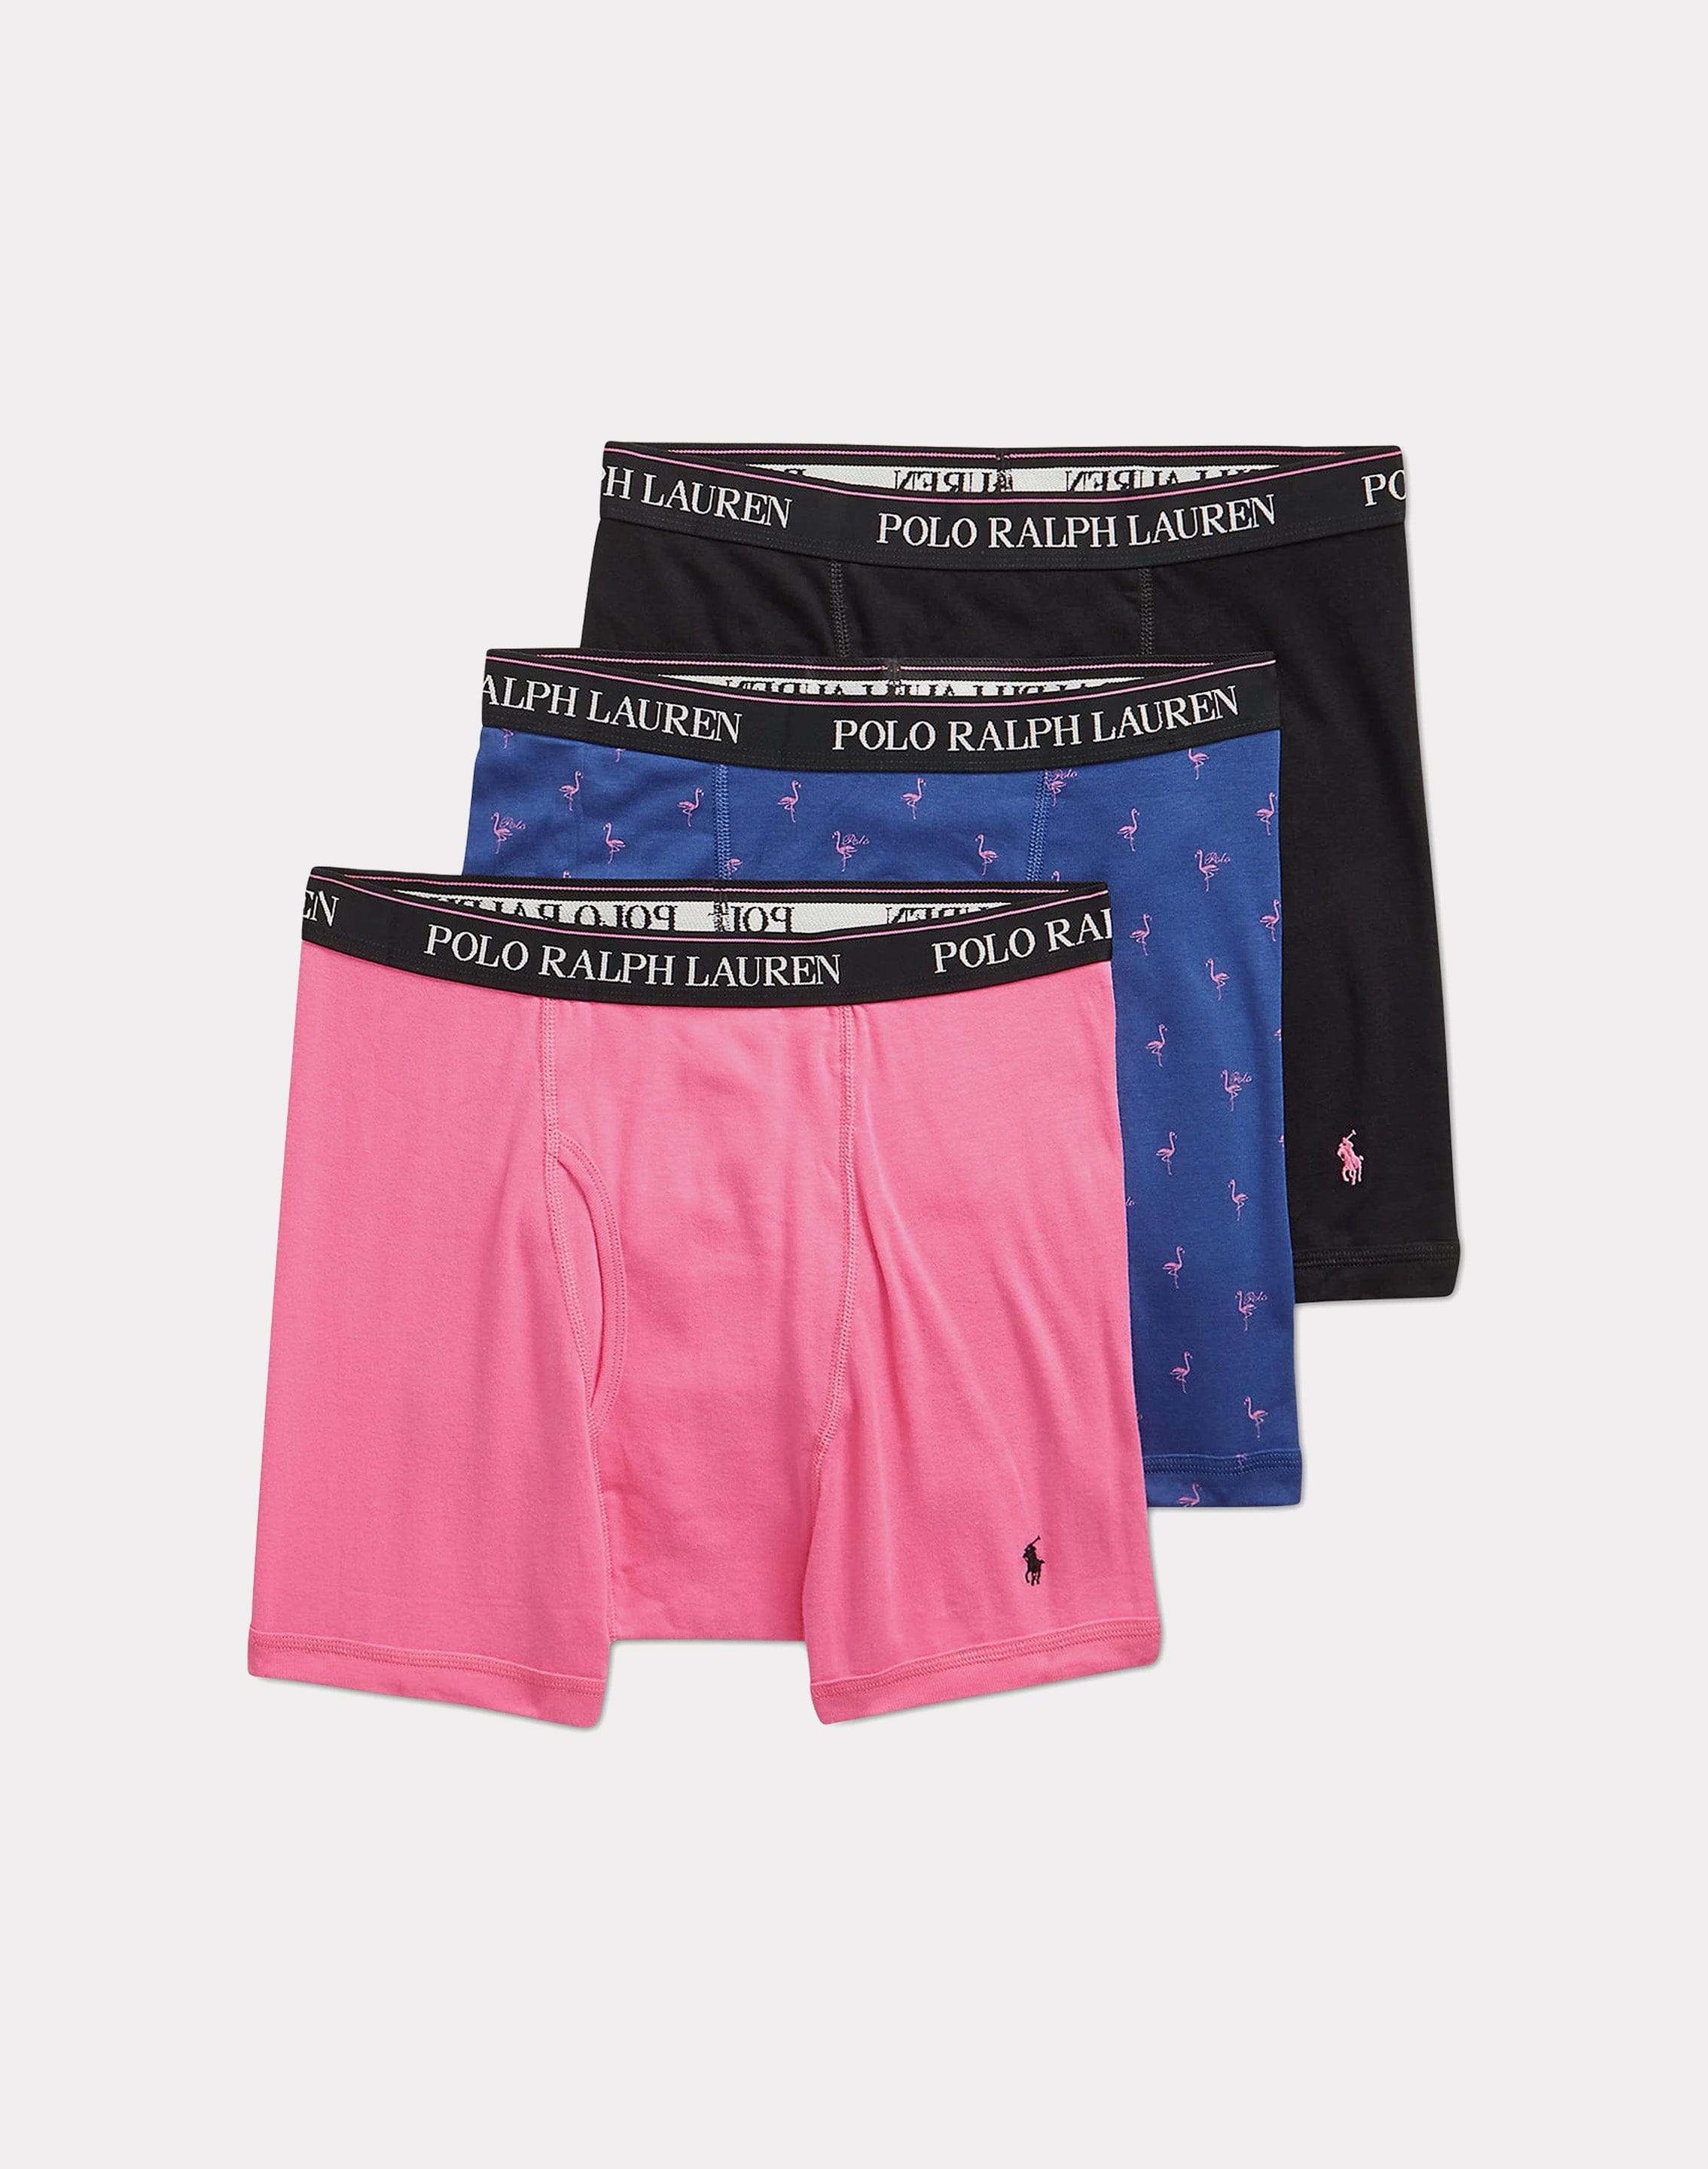 Polo Ralph Lauren Classic Fit Boxer Briefs – DTLR